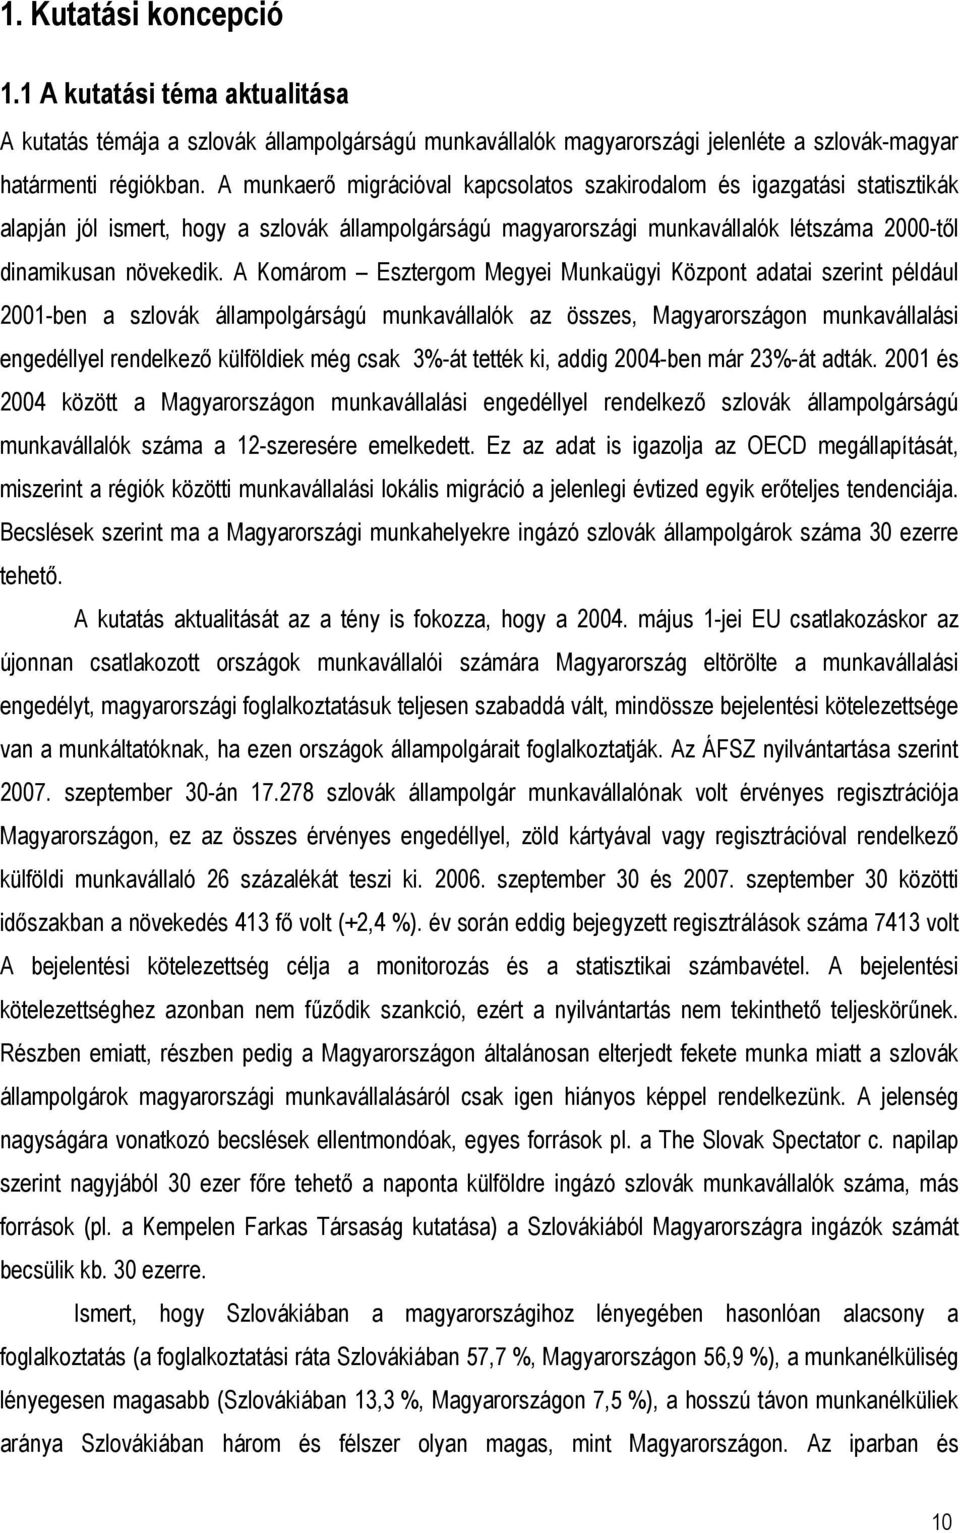 A Komárom Esztergom Megyei Munkaügyi Központ adatai szerint például 2001-ben a szlovák állampolgárságú munkavállalók az összes, Magyarországon munkavállalási engedéllyel rendelkező külföldiek még